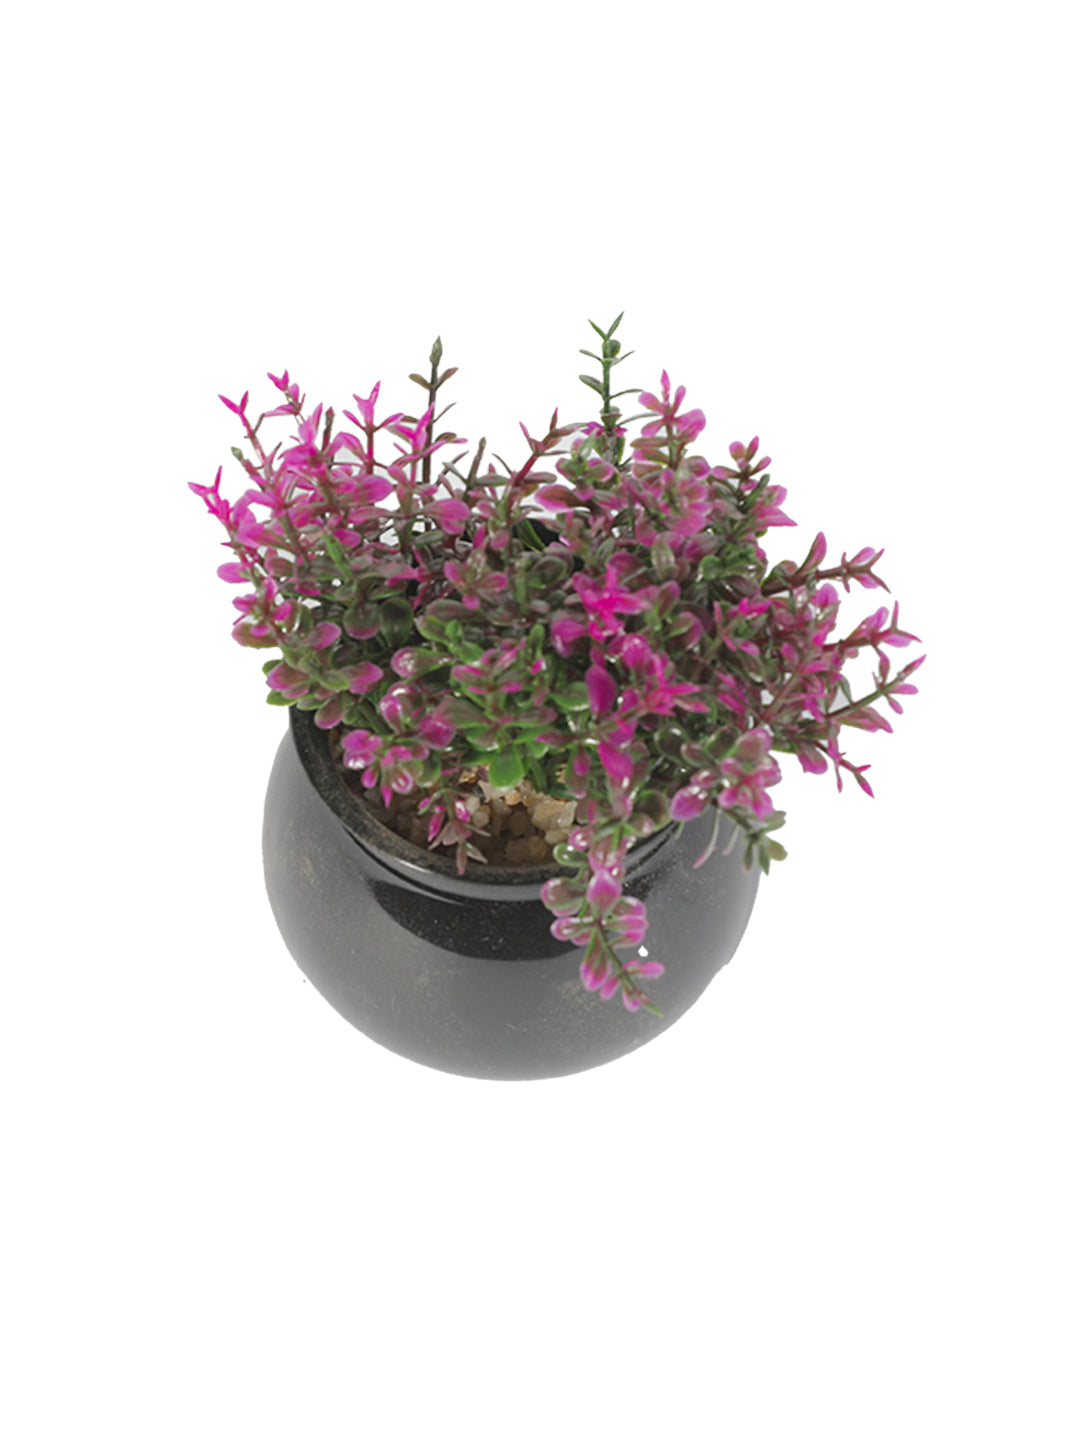 VON CASA Plastic Purple Flower With Pot - Black 